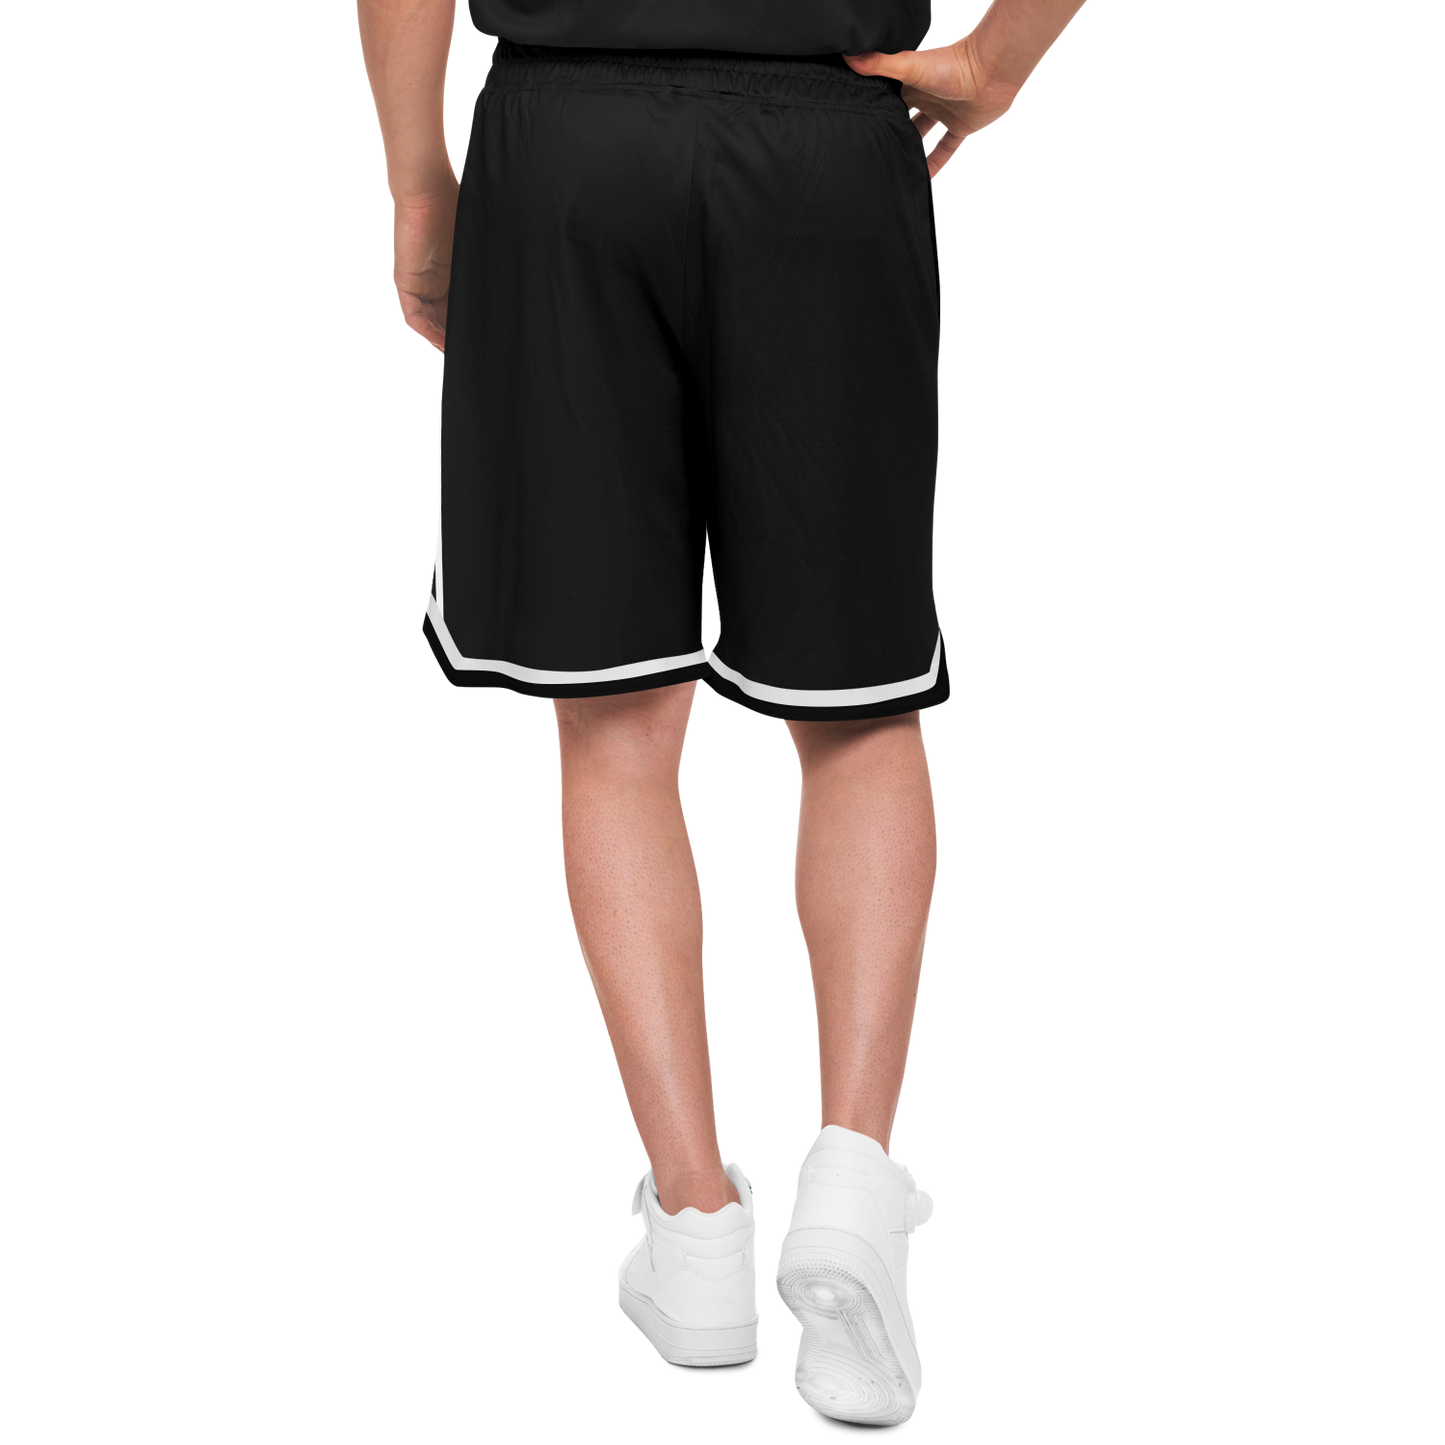 Mavrix Team BlkGold - Basketball Shorts